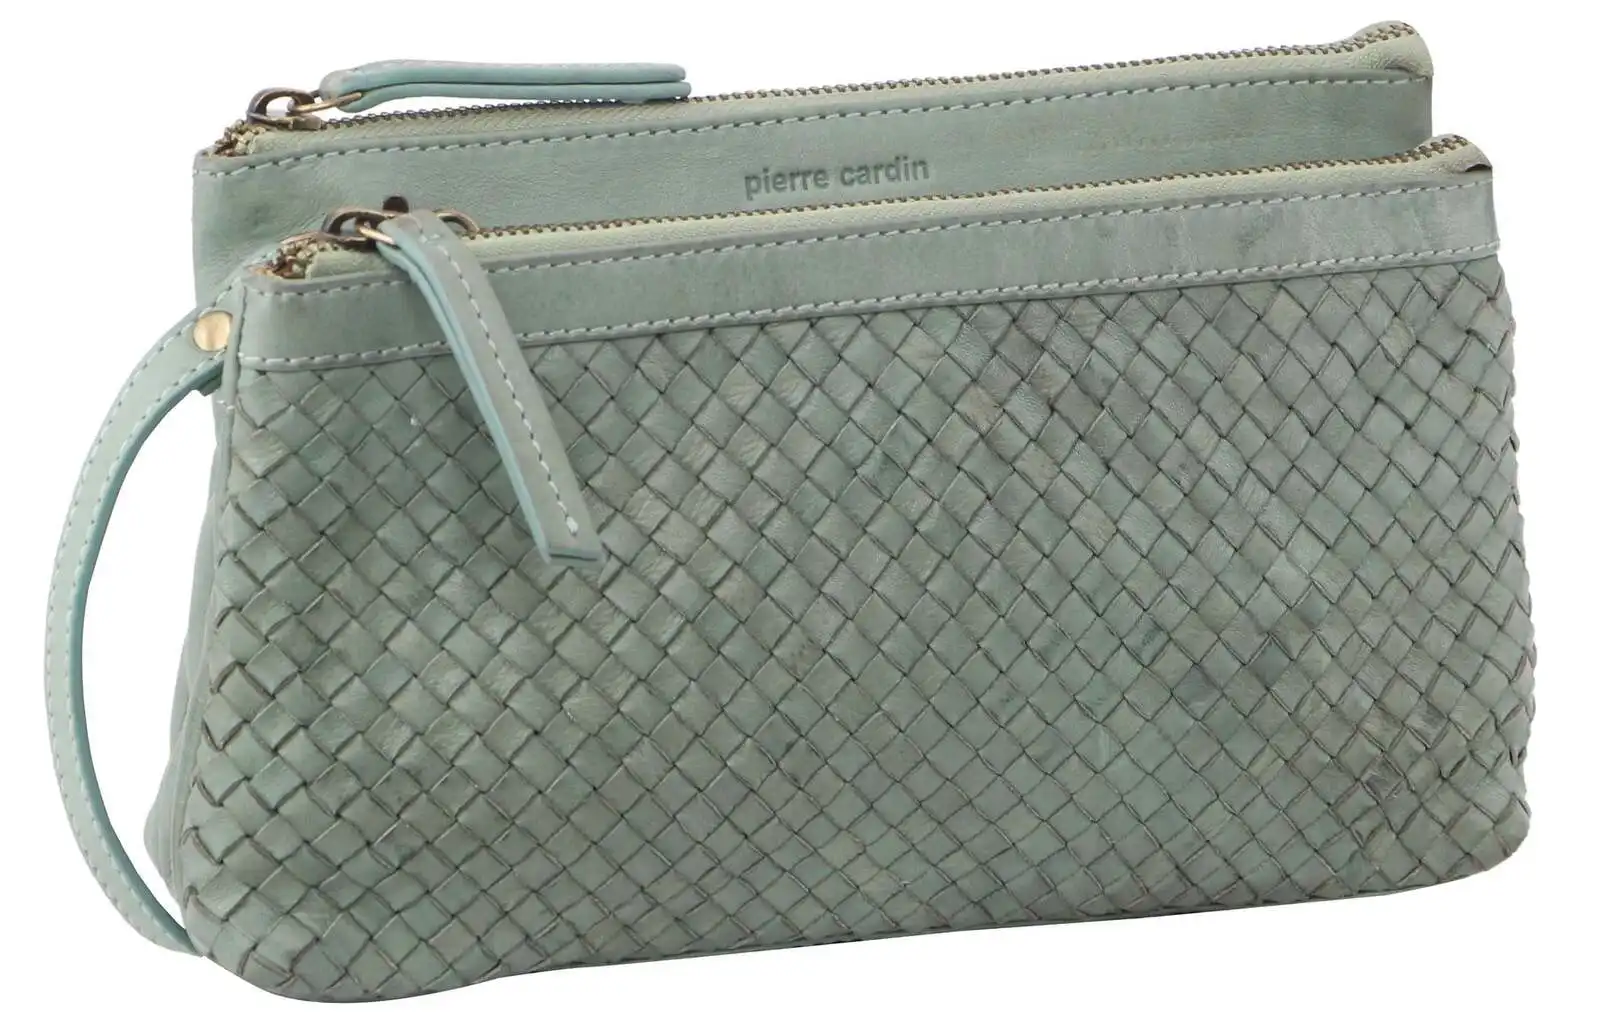 Pierre Cardin Woven Ladies Crossbody/Clutch Bag - Mint